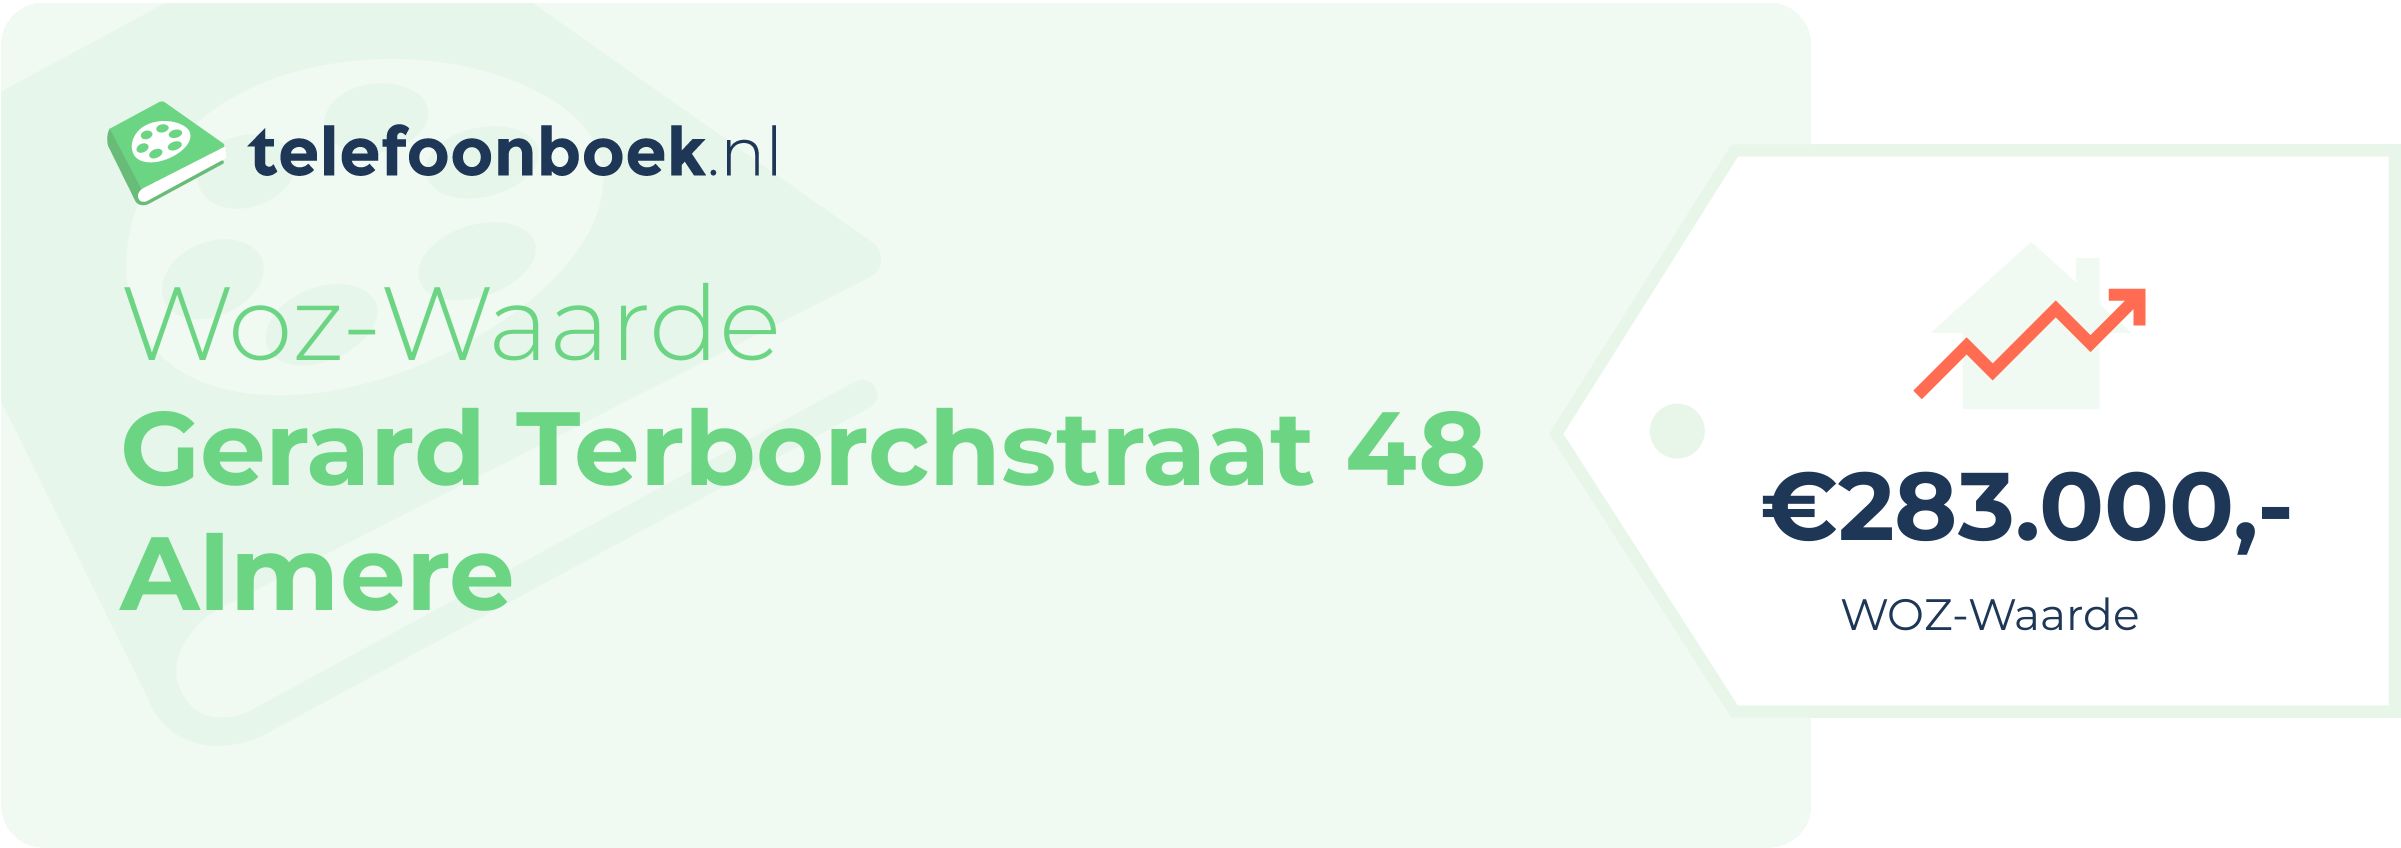 WOZ-waarde Gerard Terborchstraat 48 Almere